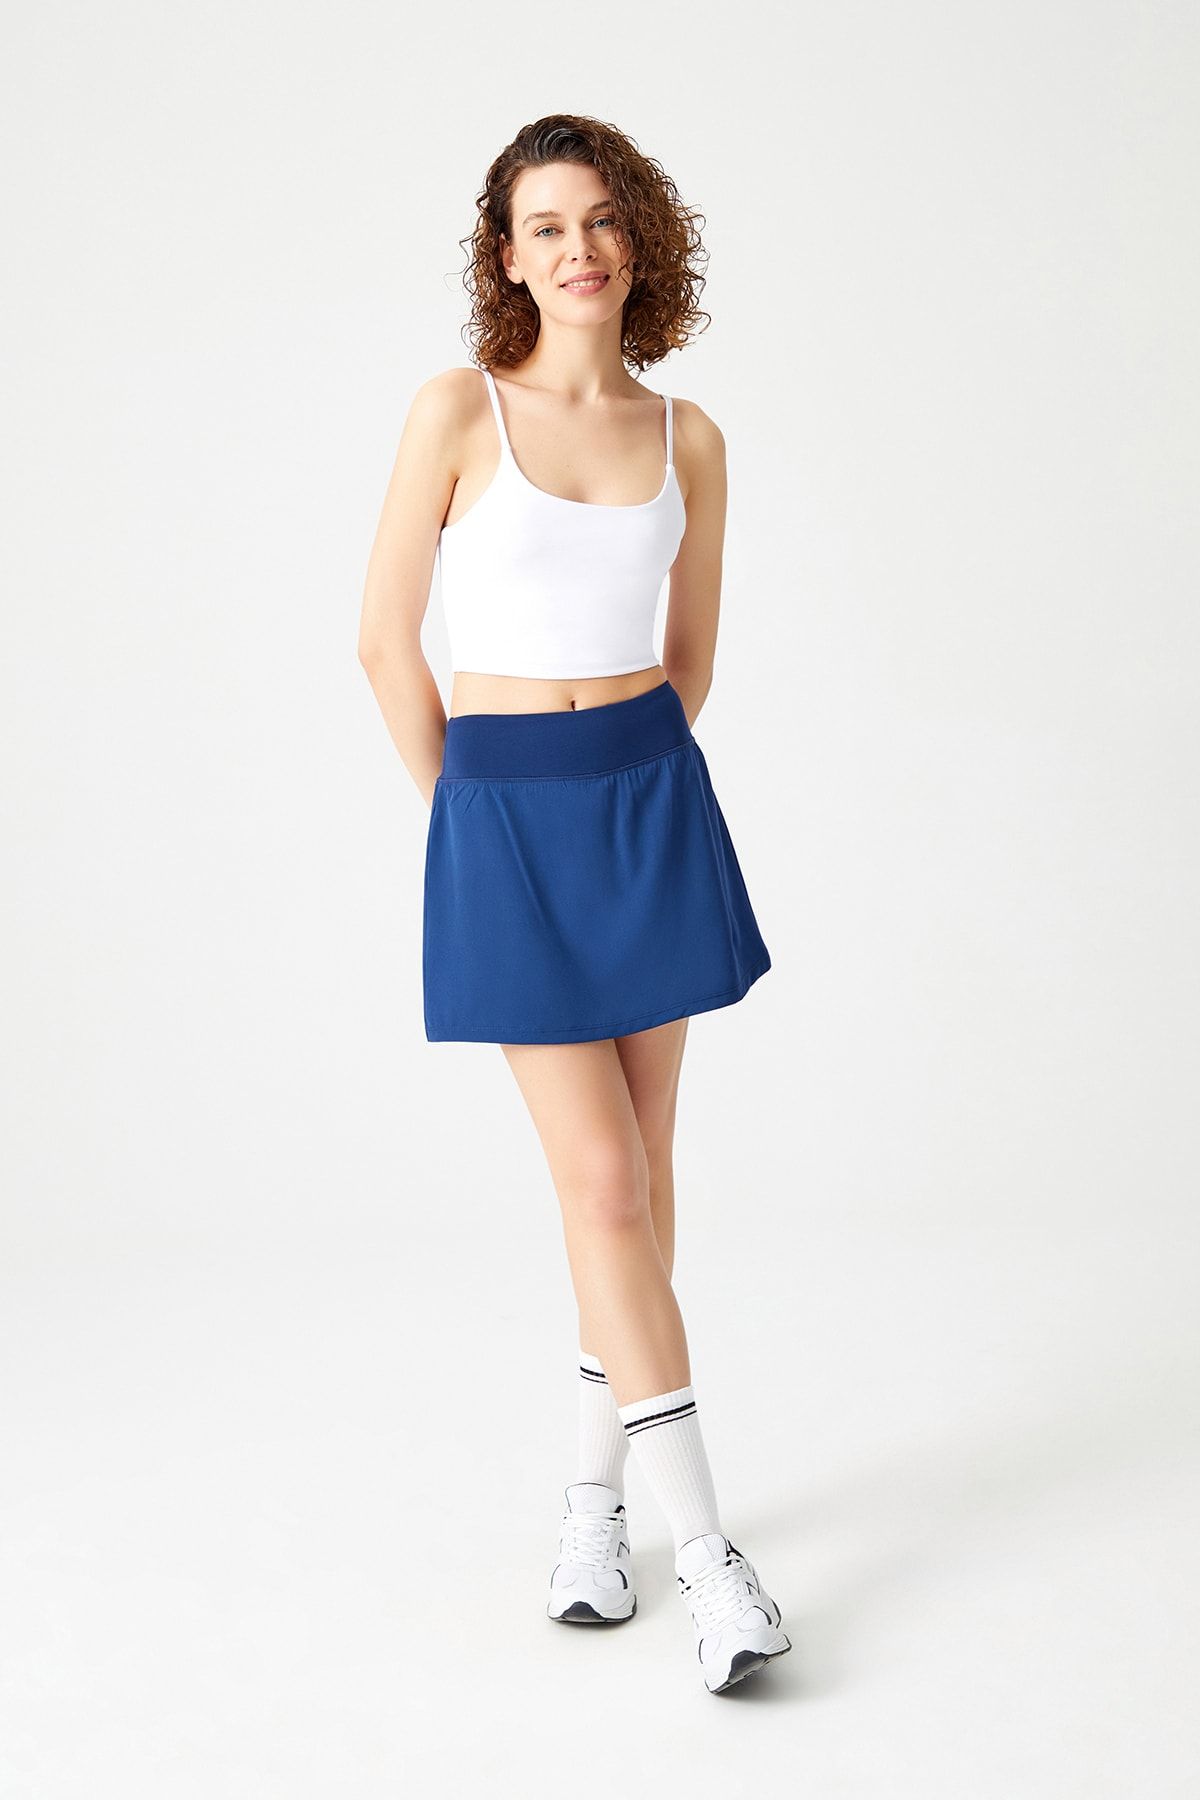 LOS OJOS Lacivert 2 Katmanlı Tenis Eteği - Şort Etek - Spor Etek Tennis Skirt